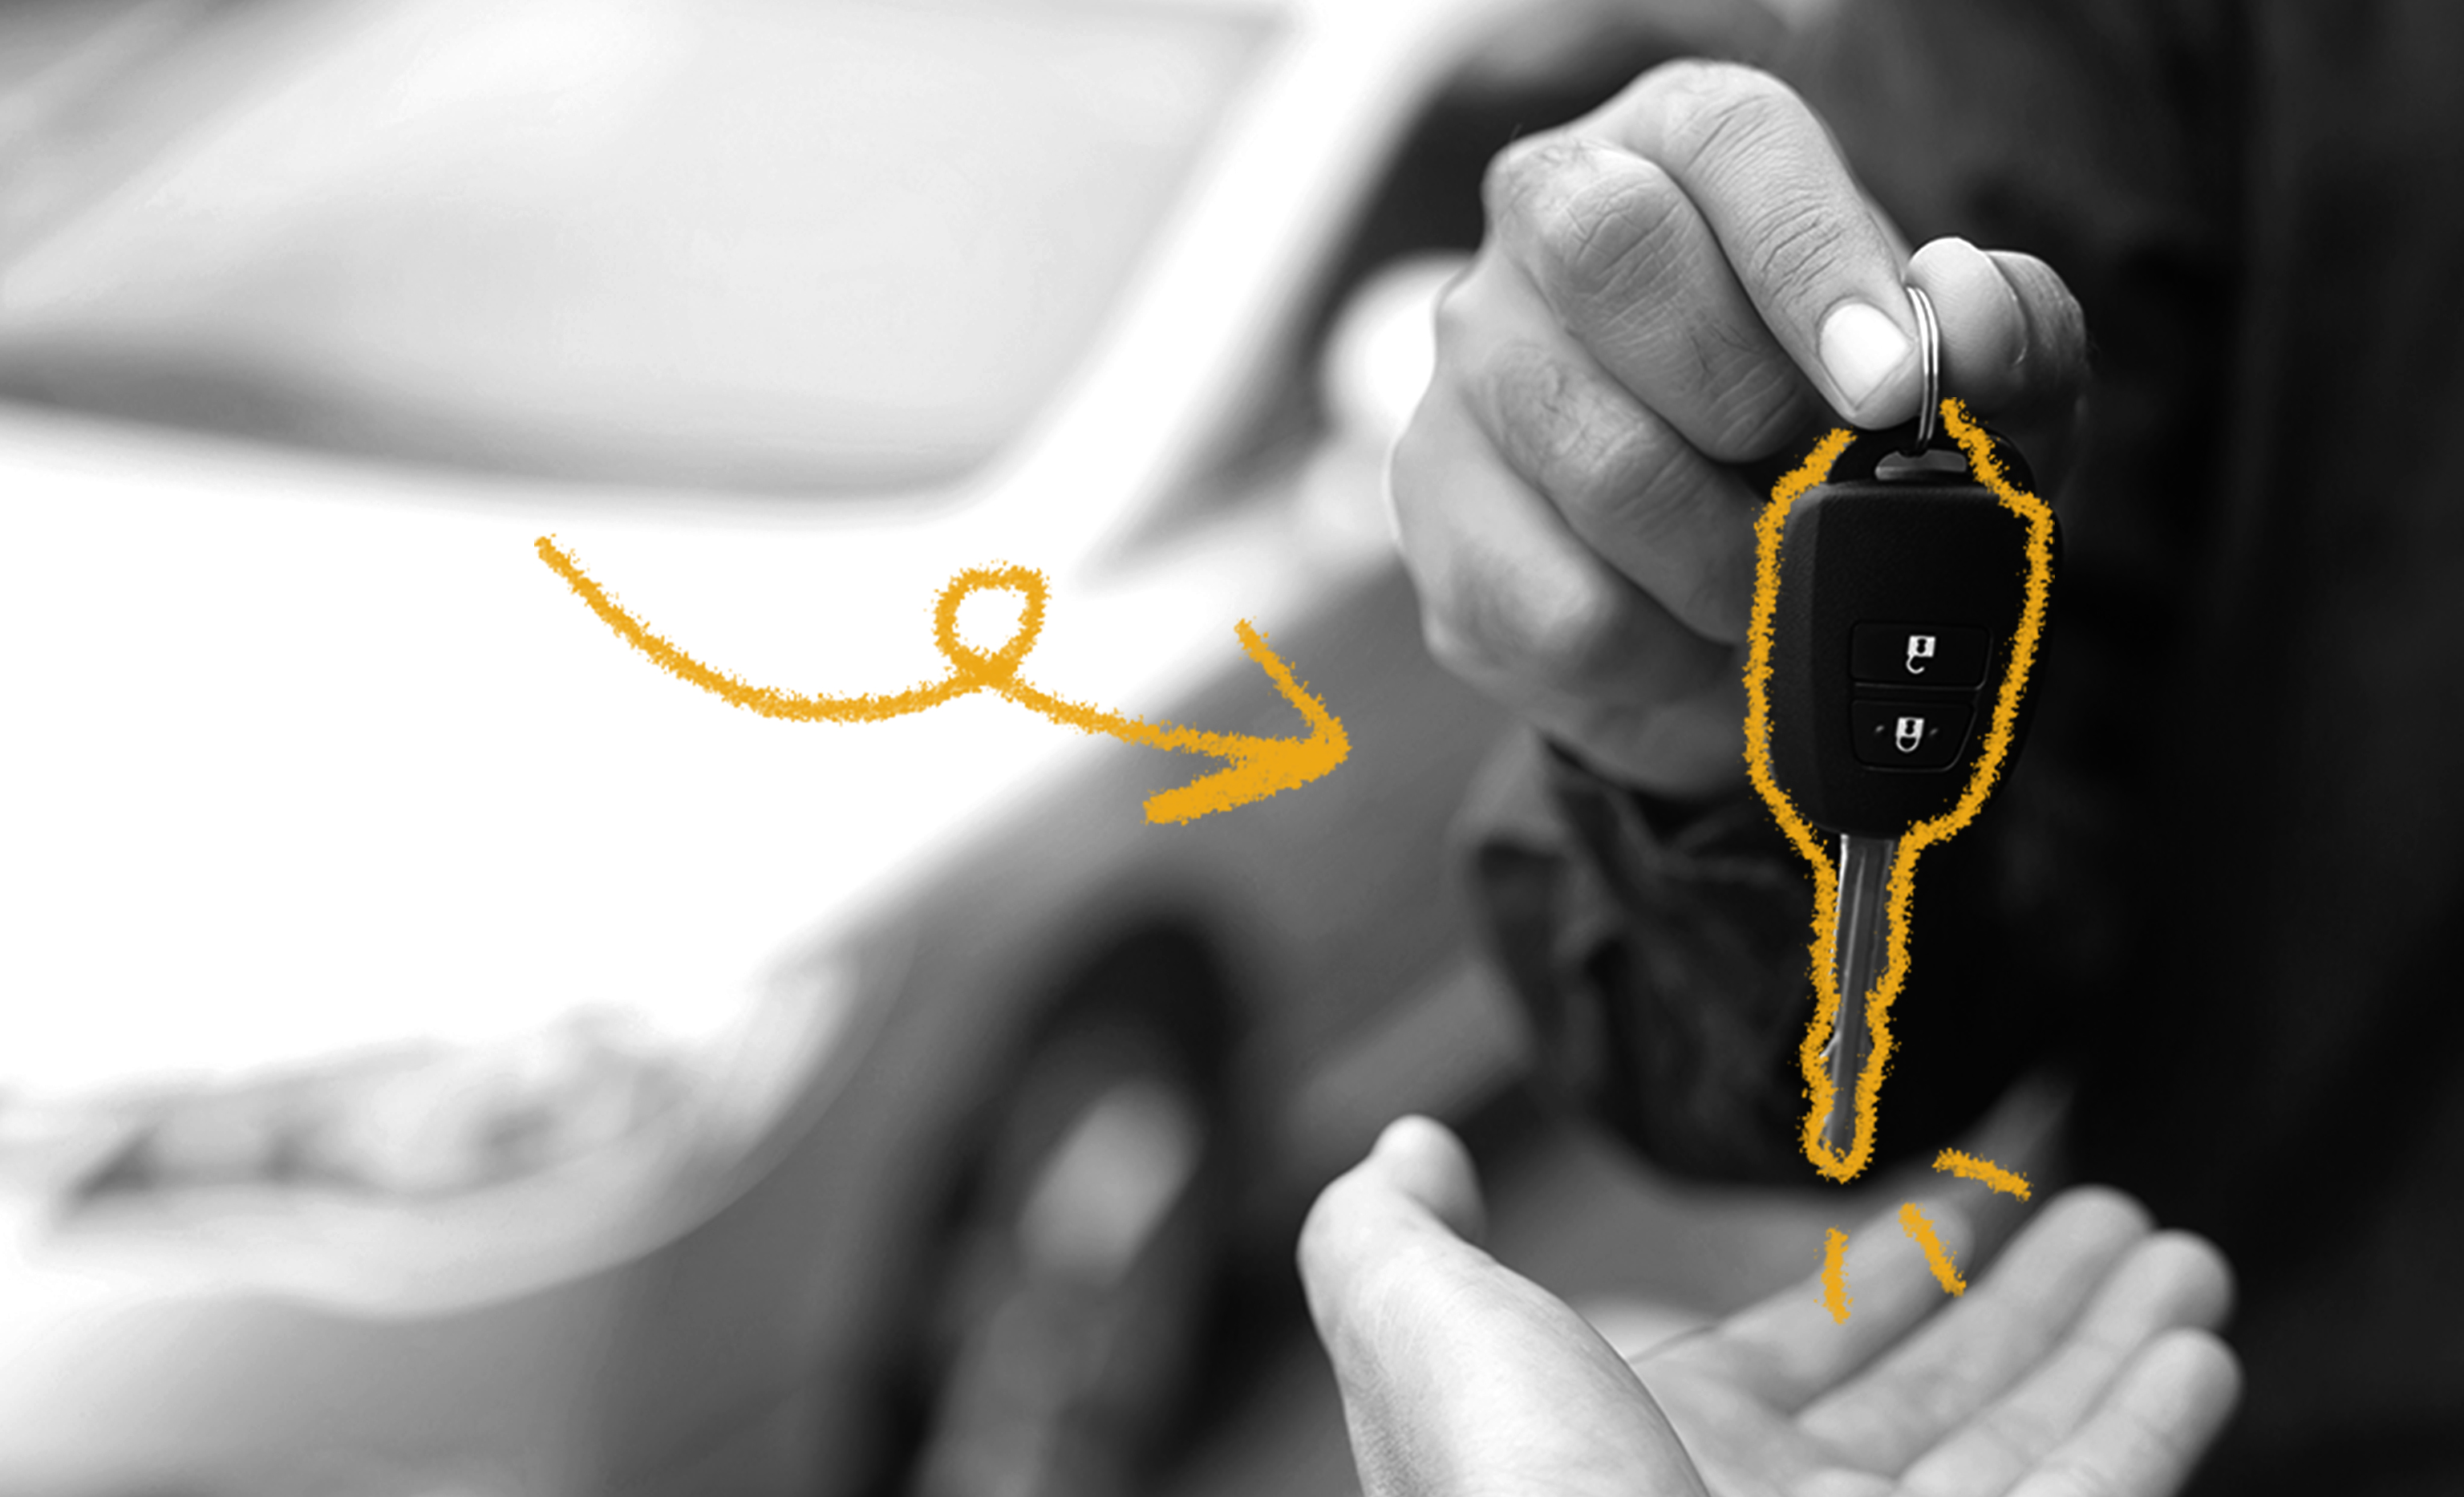 The History of Car Keys